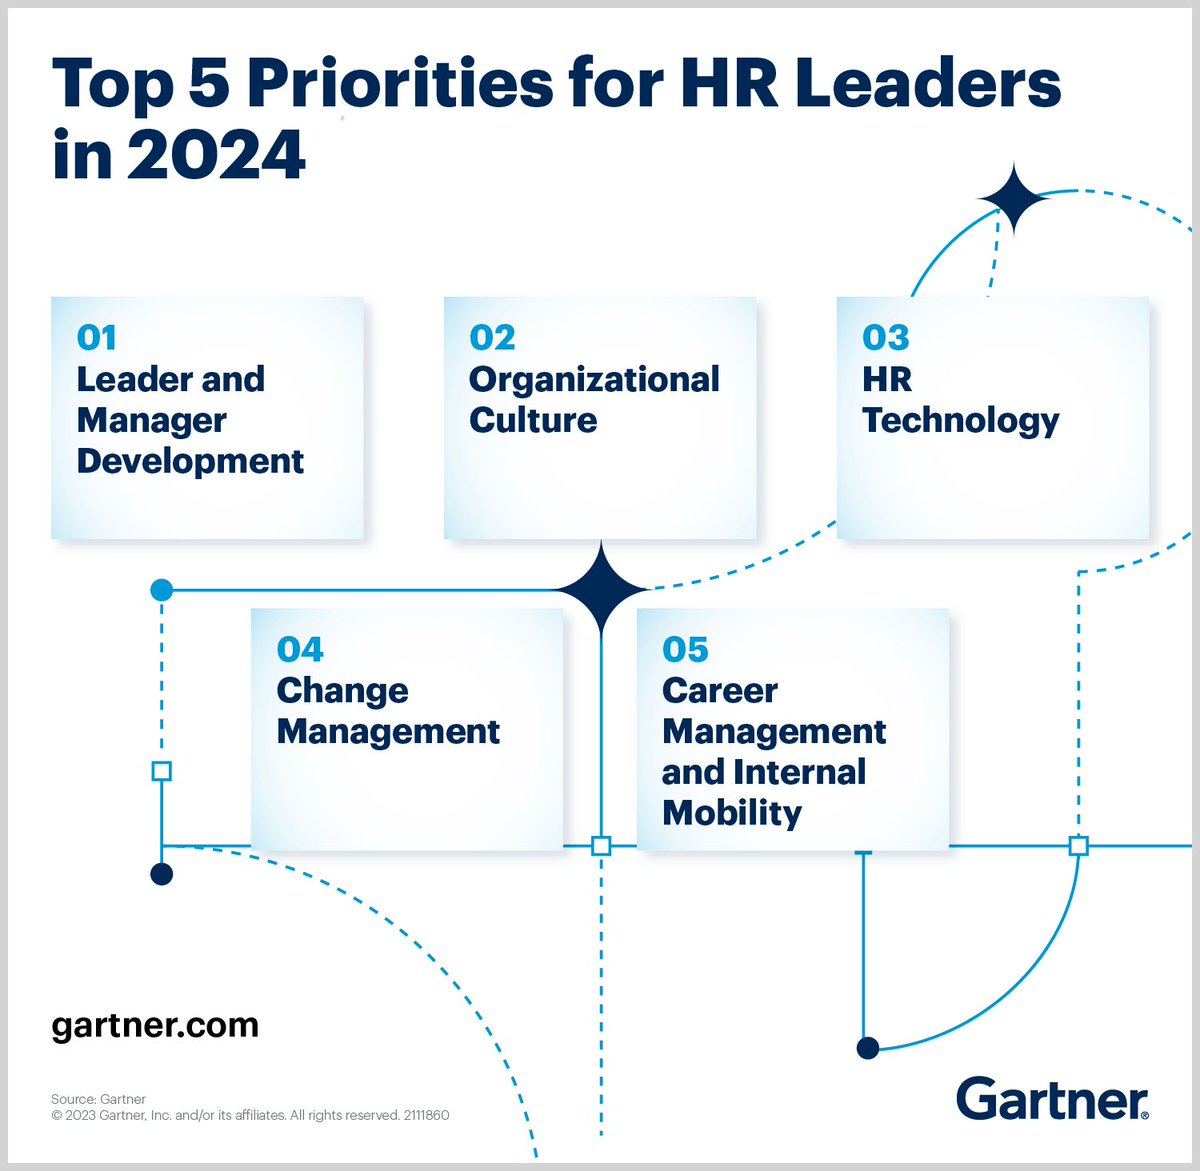 Gartner tarafından hazırlanan ve insan kaynakları liderleri tarafından dikkatle takip edilen 'Top 5 Priorities for HR Leaders in 2024' raporu geçtiğimiz günlerde paylaşıldı.

Sizlerle her sene olduğu gibi önceki senelerle kıyaslamalı değerlendirmemi paylaşmak istiyorum.

2022